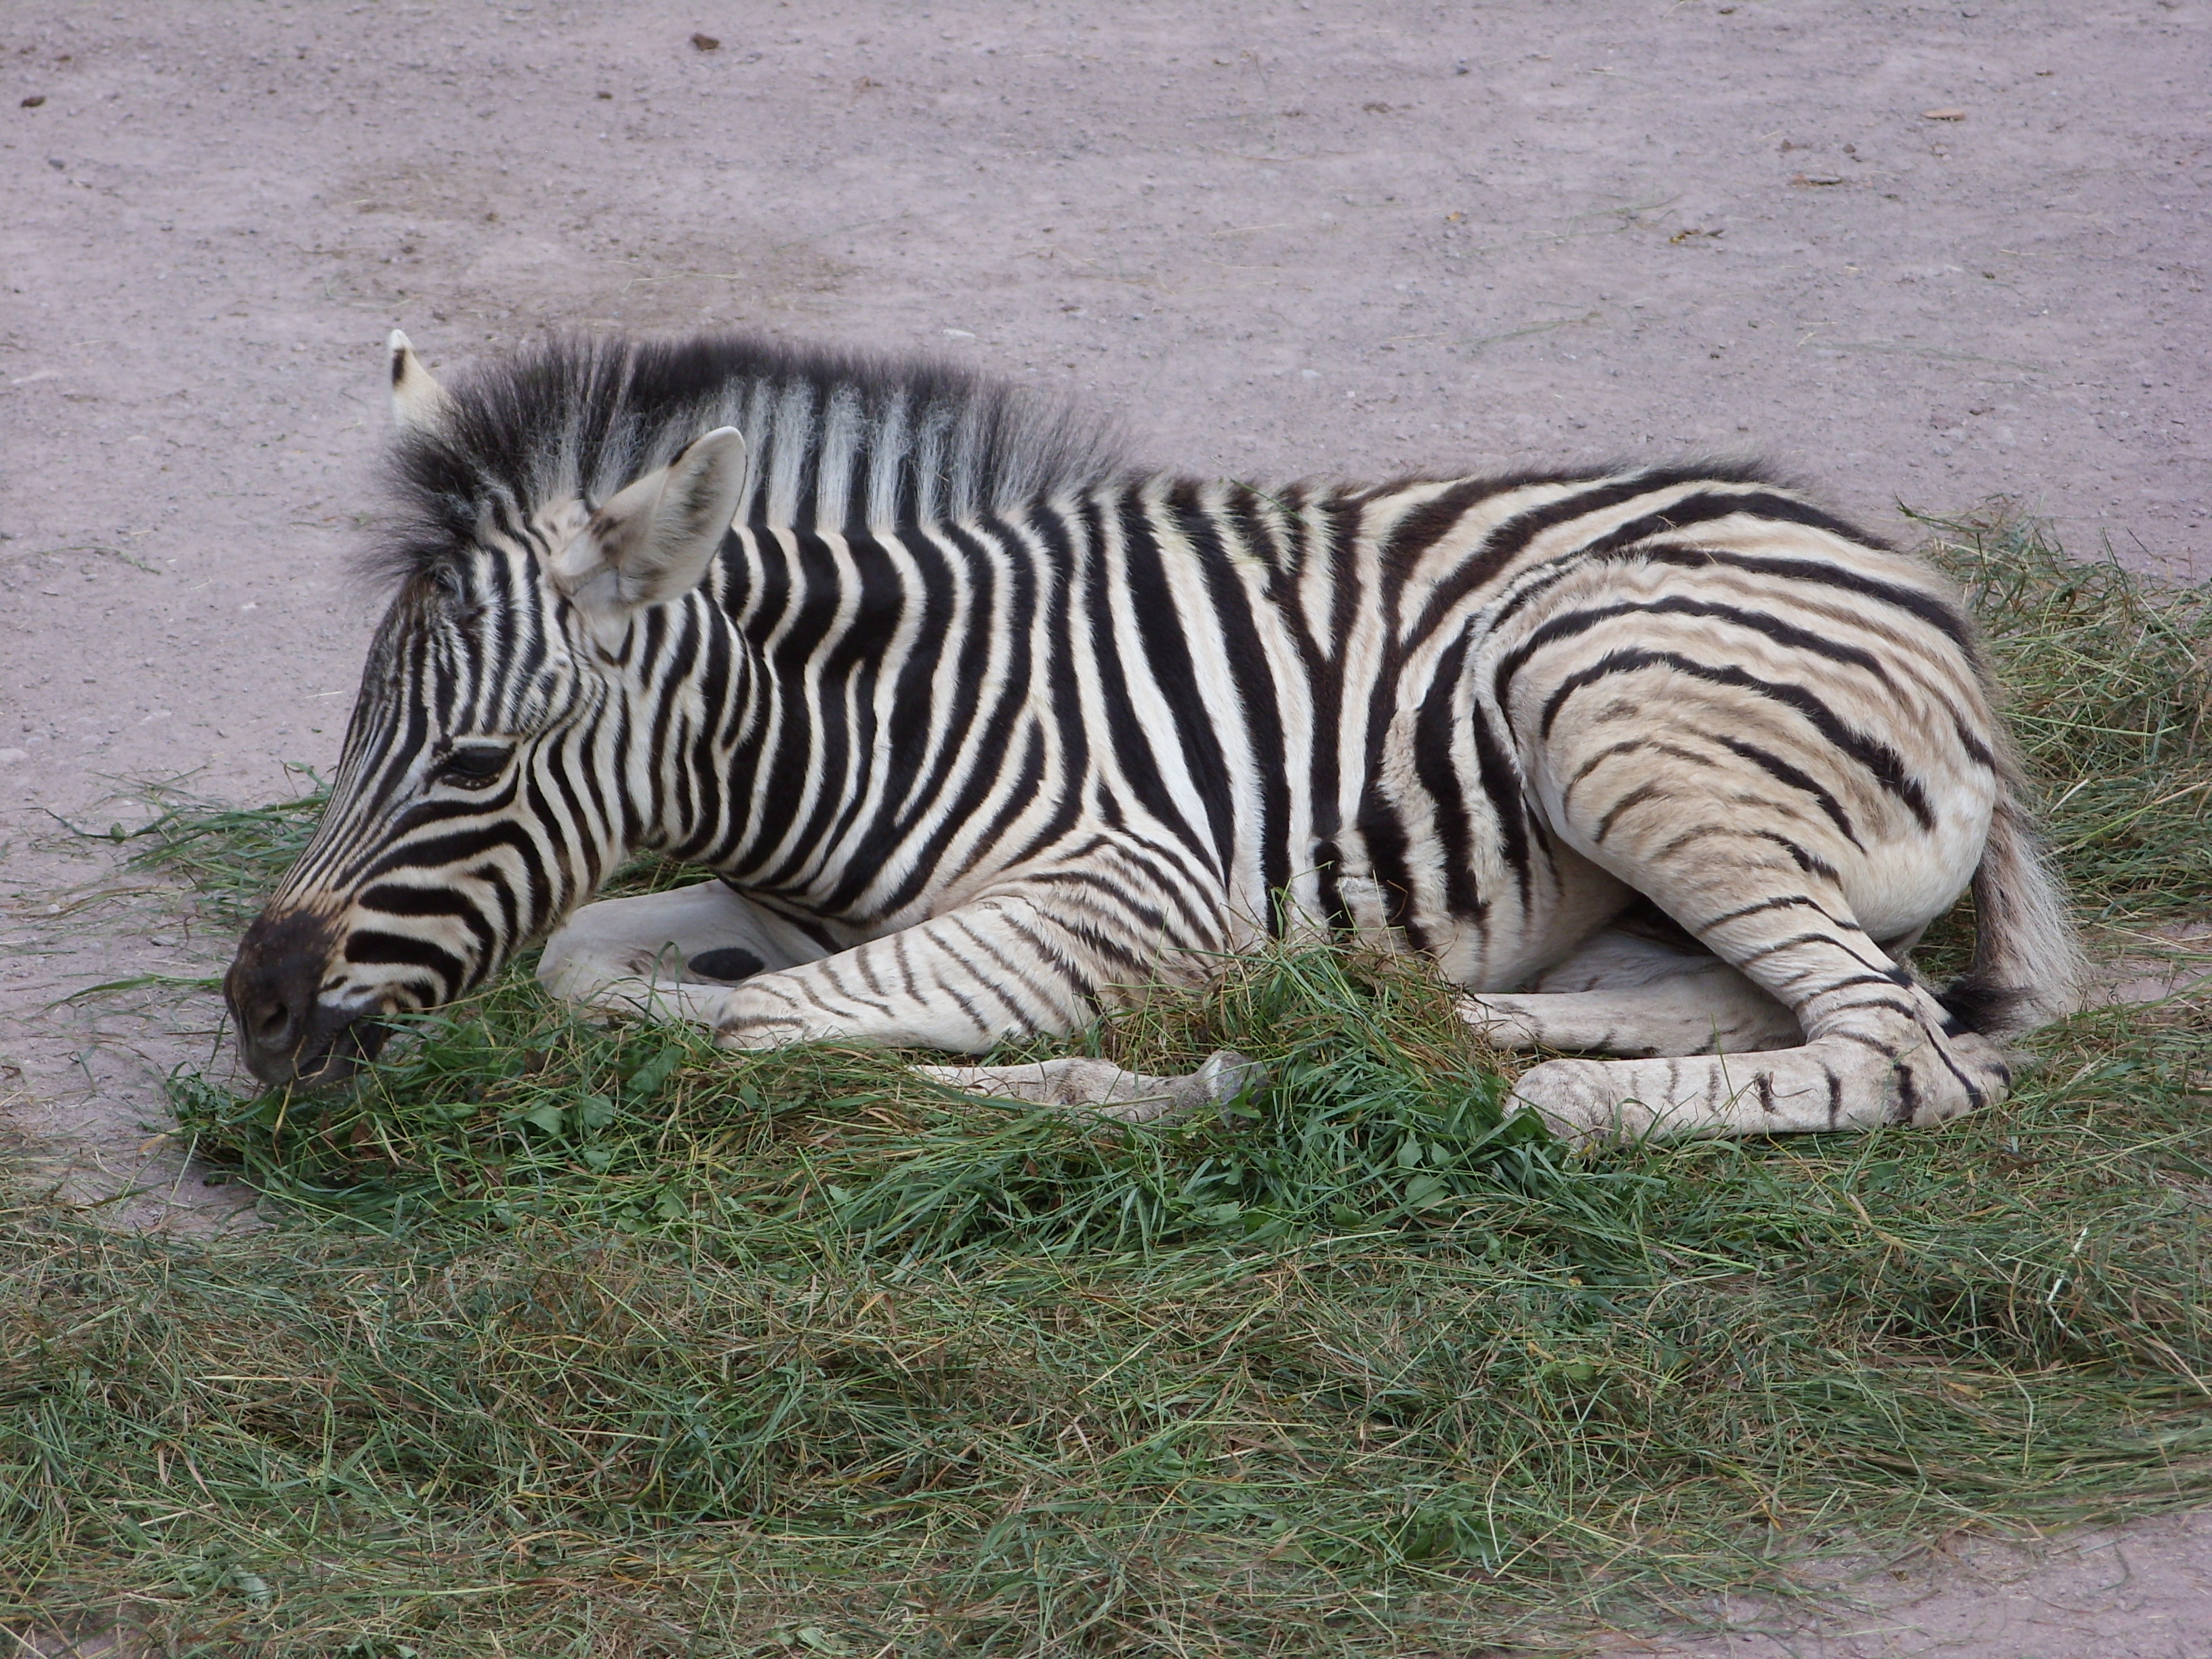 Brustlage bei den Zebras.